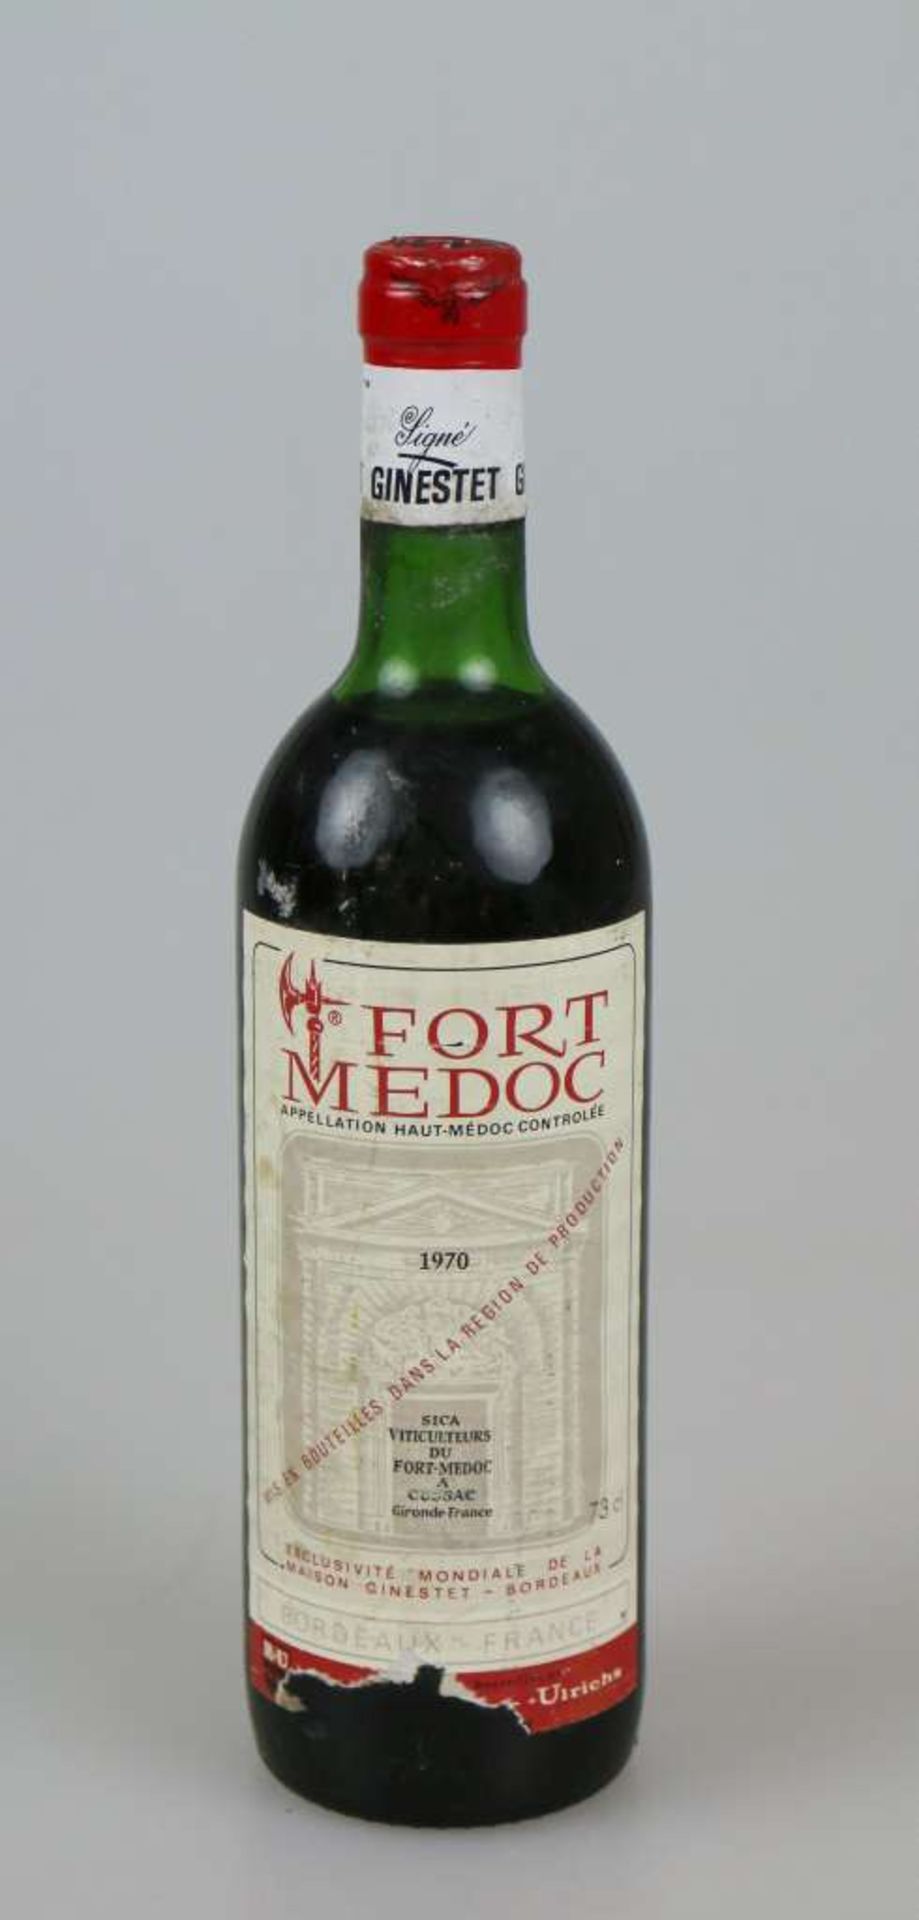 Rotwein, Flasche Fort Medoc, 1970, 0,73 L. Top shoulder, Etikett beschädigt. Der Wein stammt aus - Bild 3 aus 4